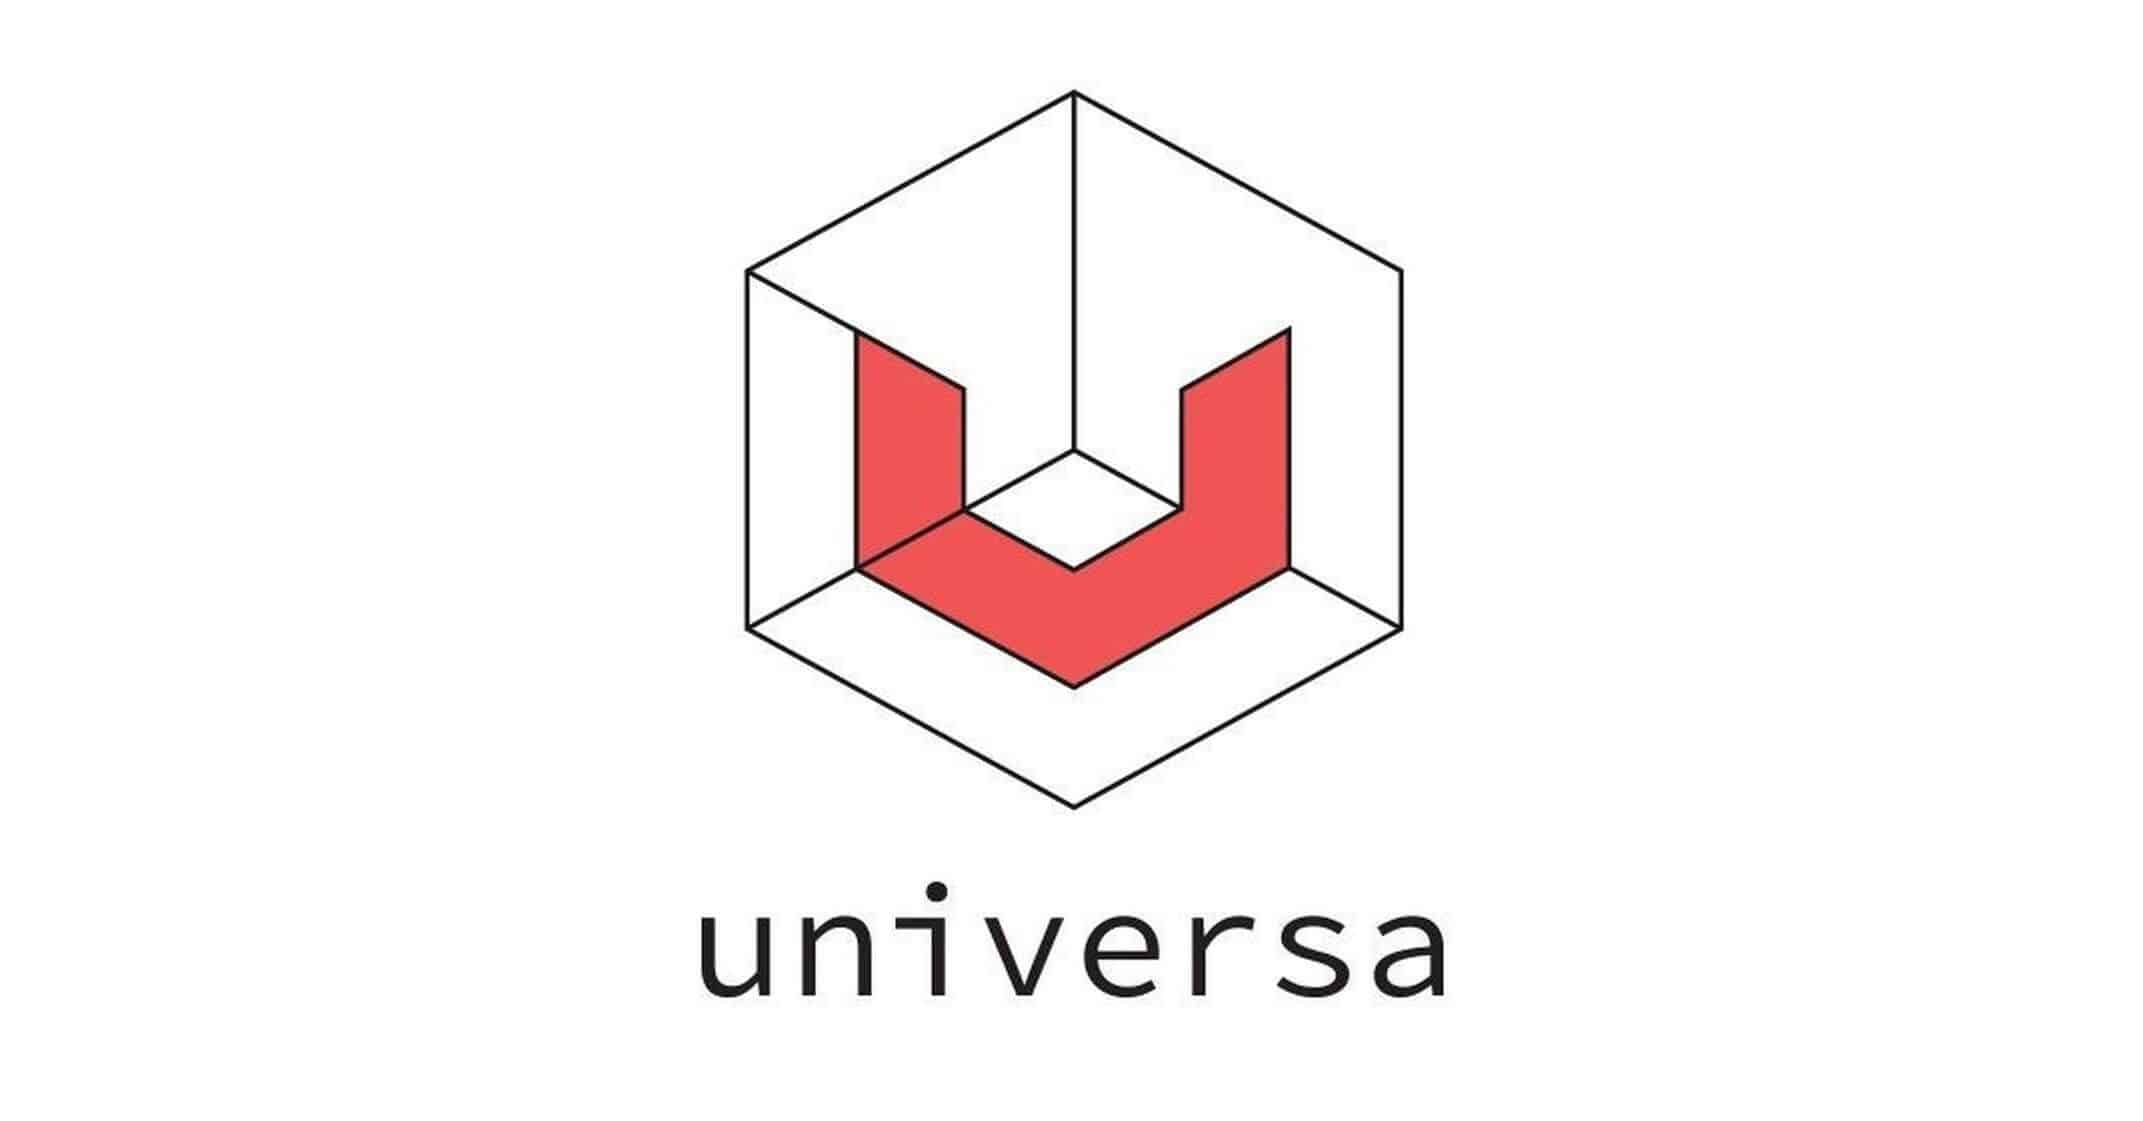 Universa Logo